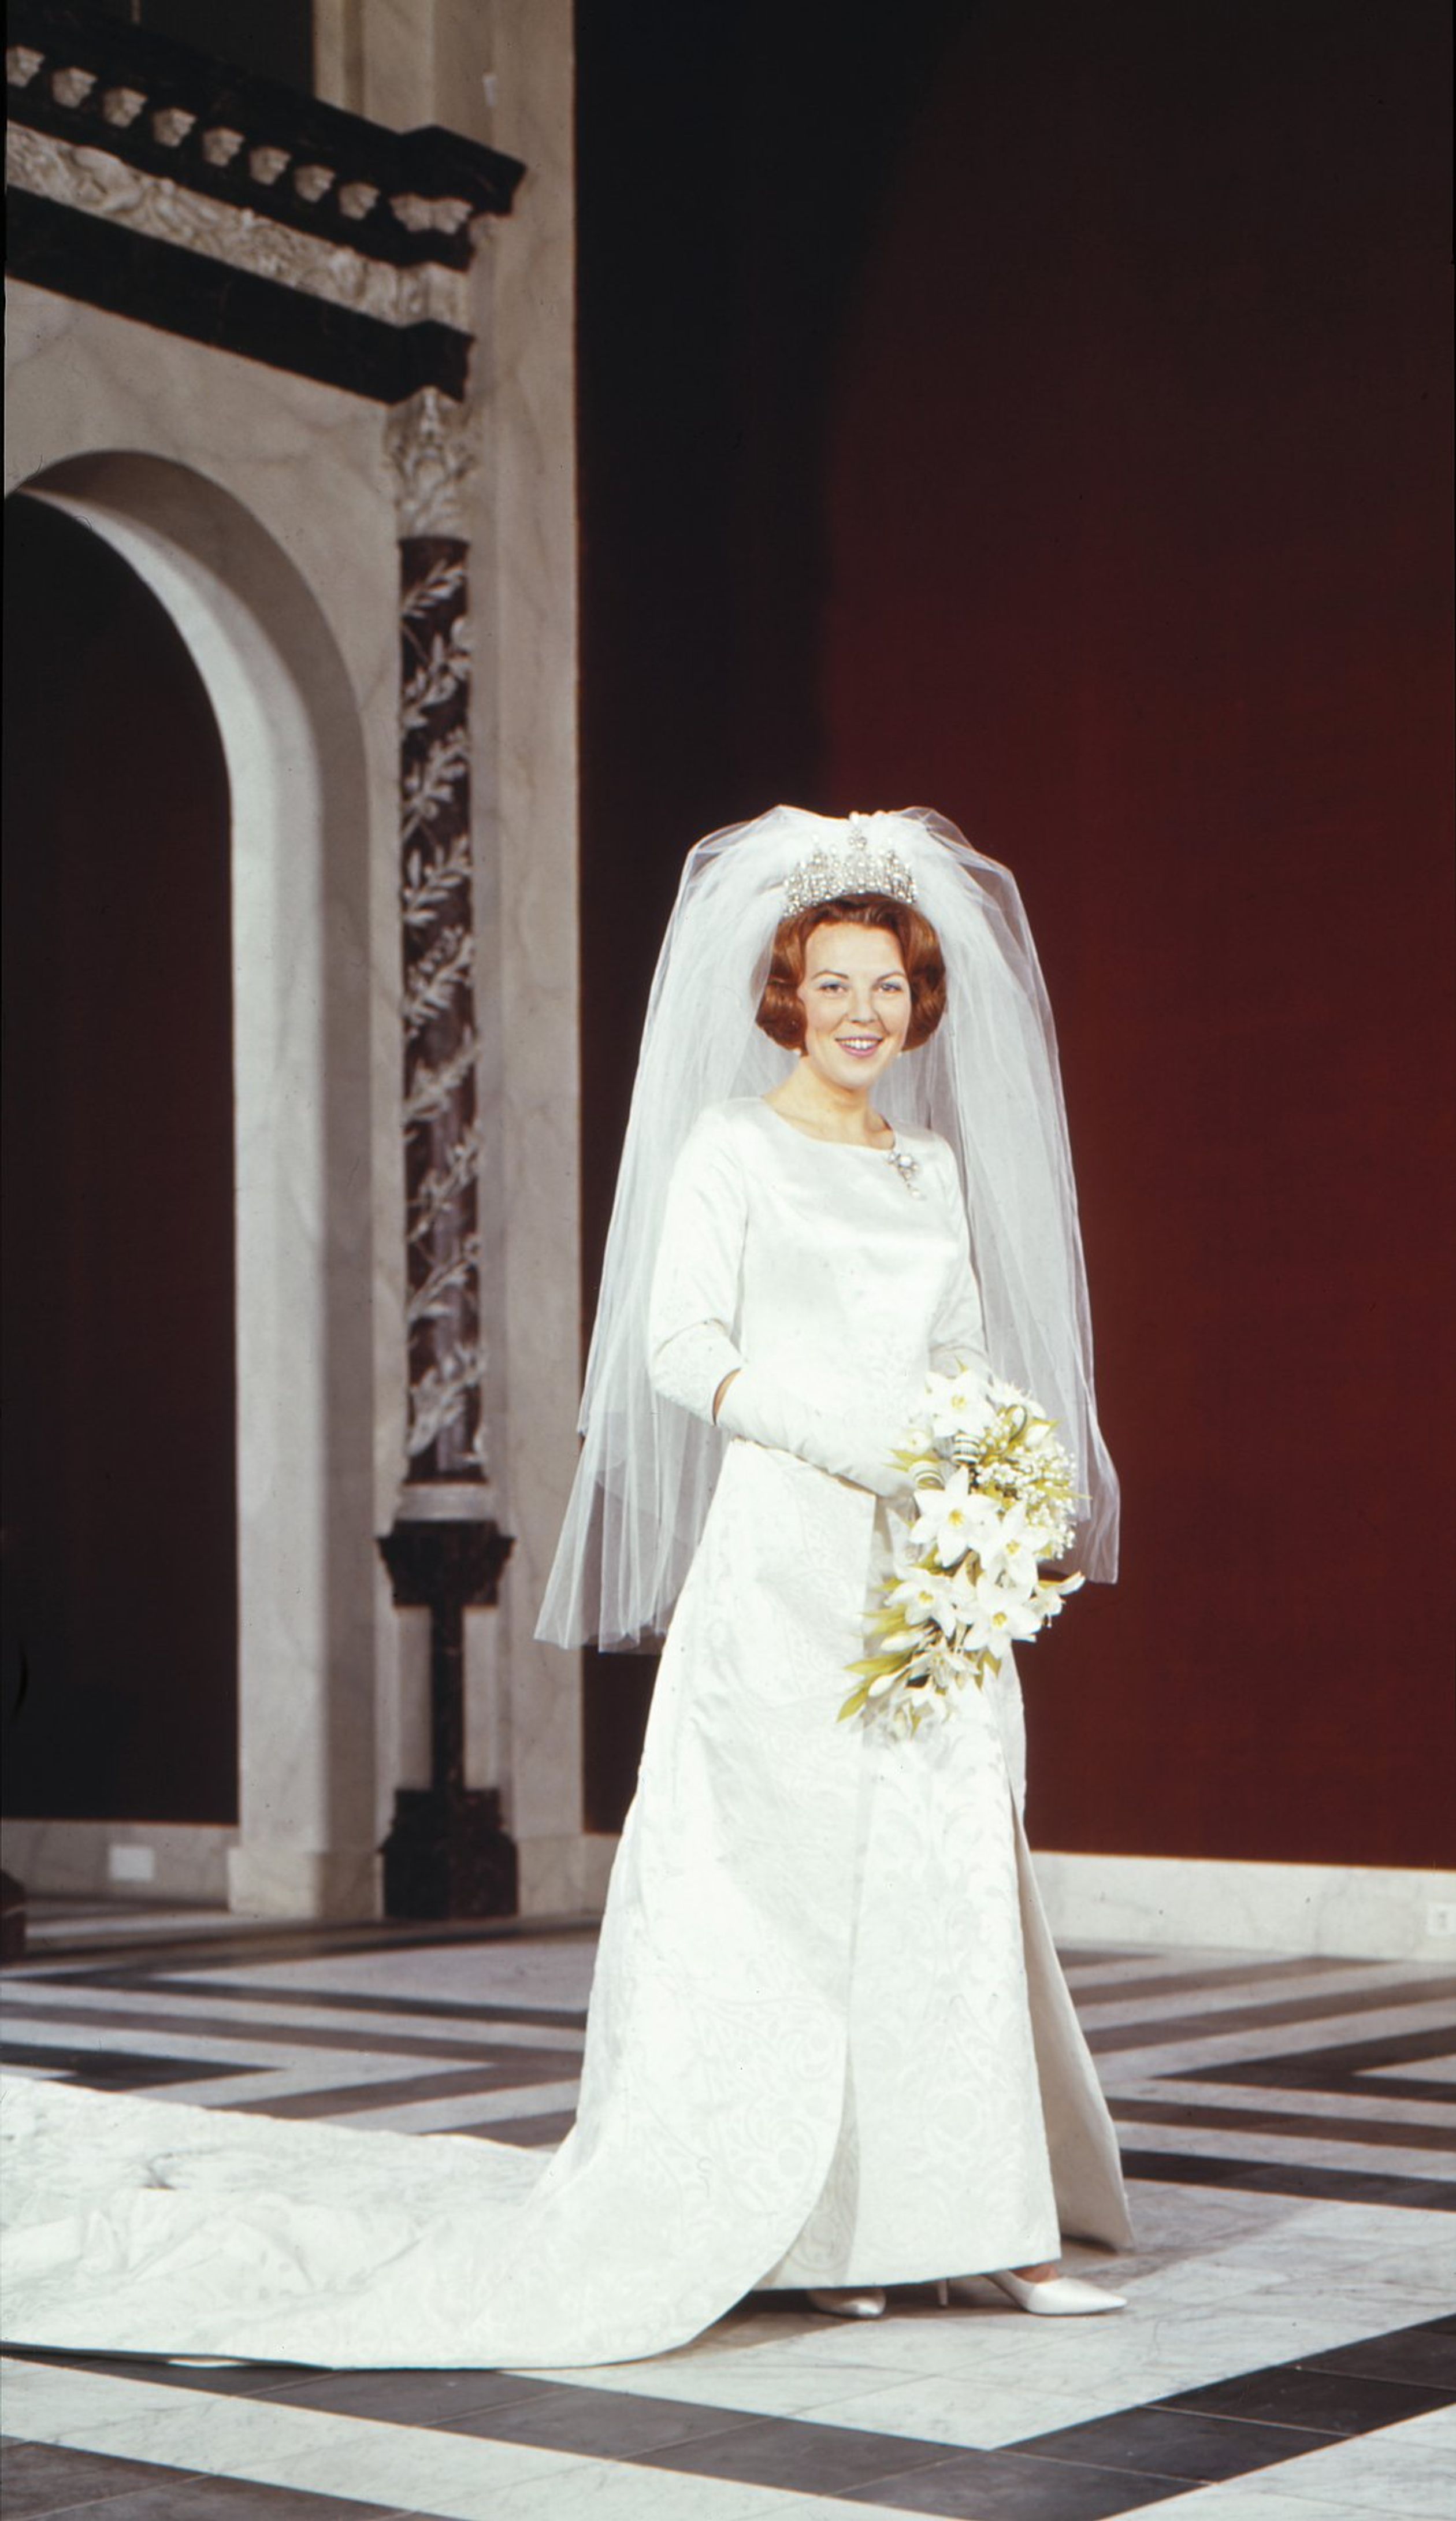 De jurk van prinses Beatrix werd vervaardigd door Lien Bergé-Farwick, de eigenares van modehuis